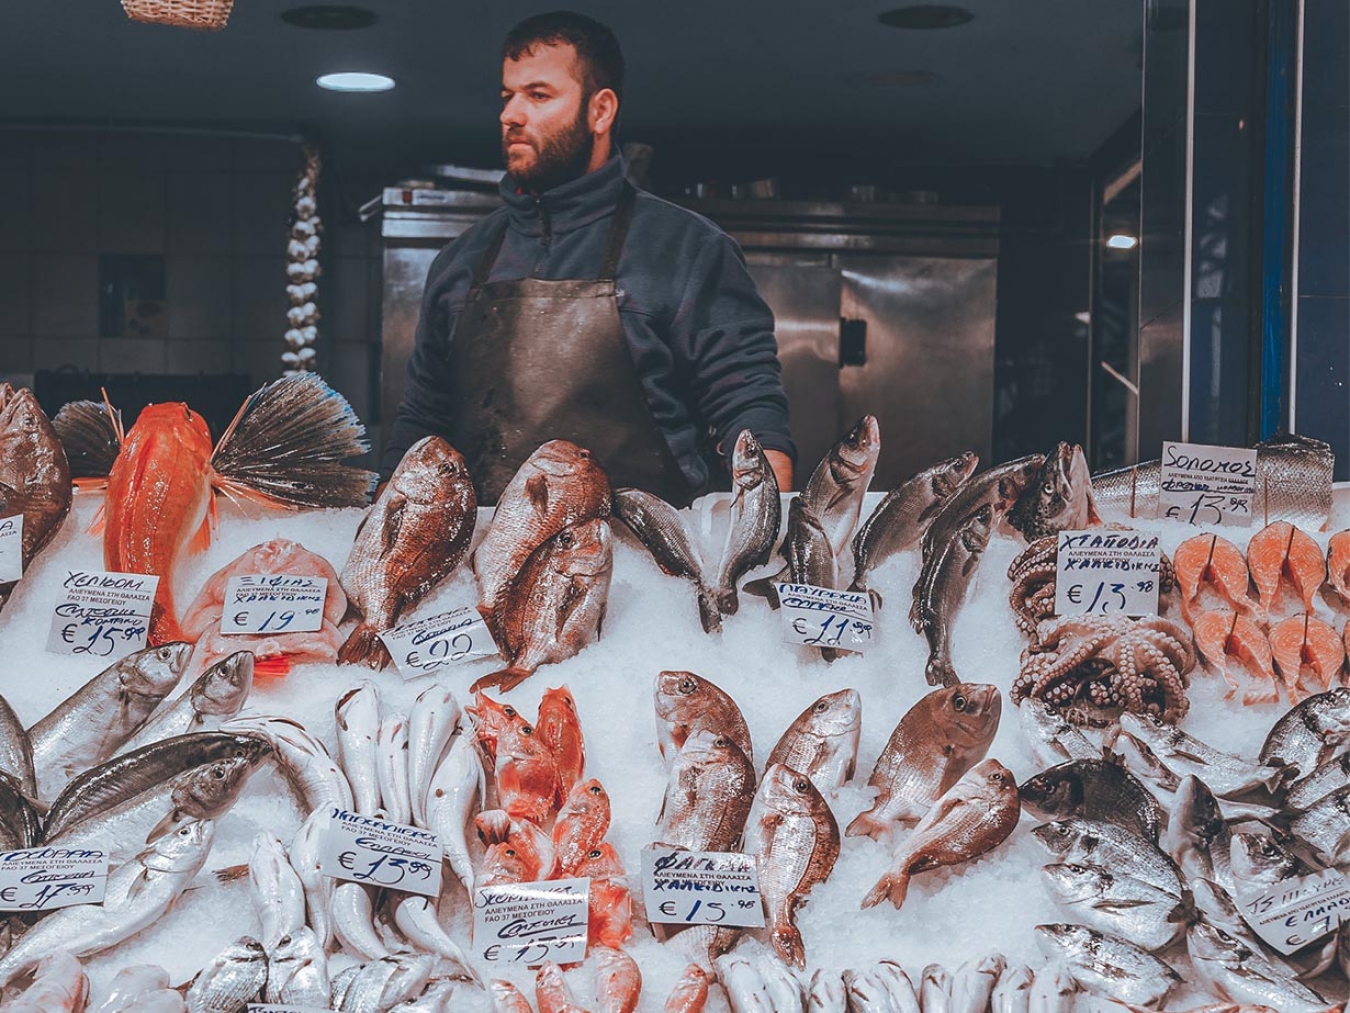 Kapani: The fish market